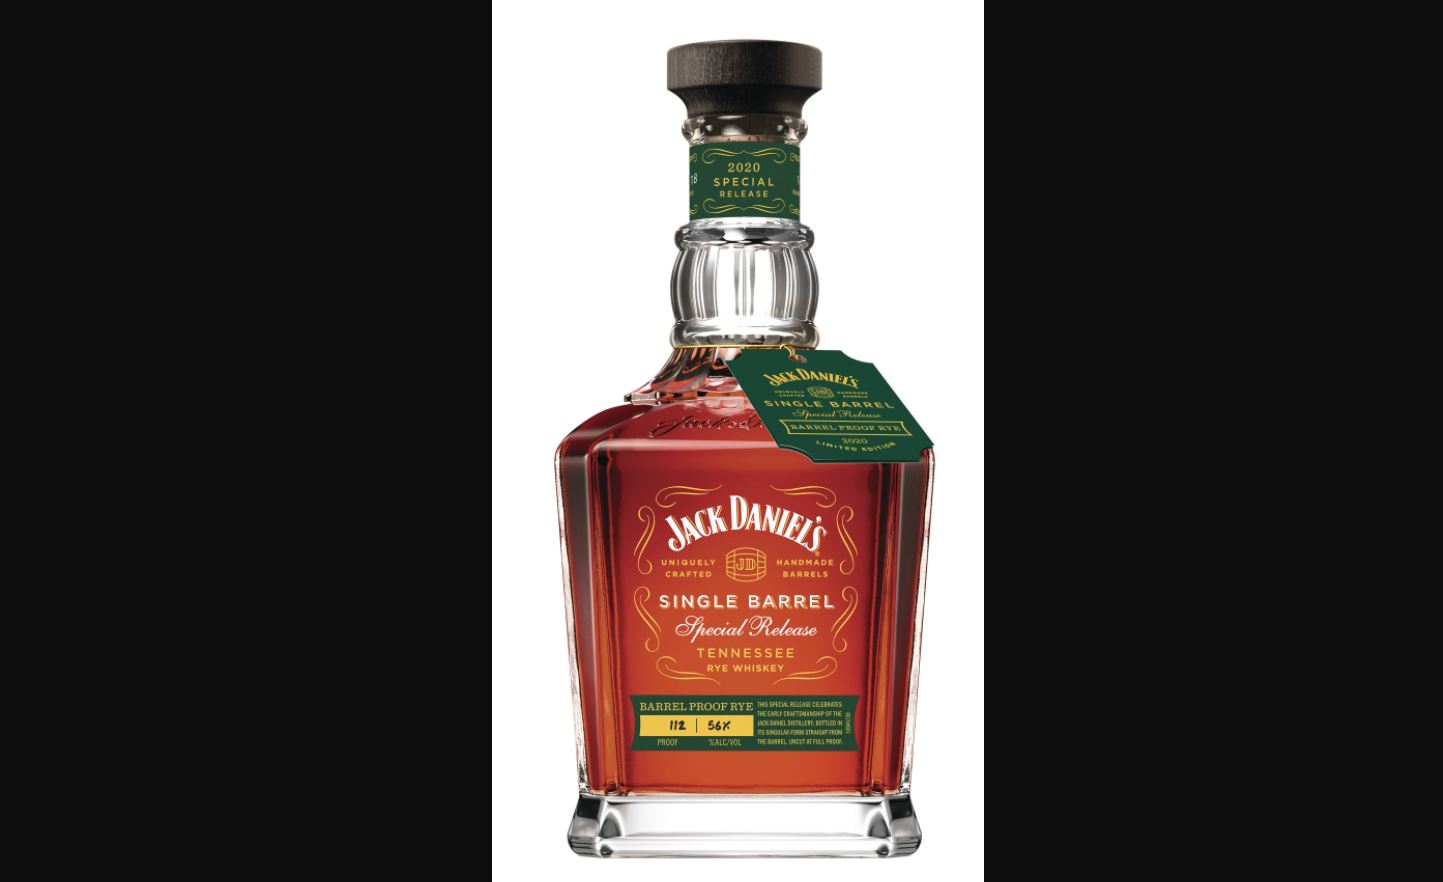 Jack Daniel’s Single Barrel Barrel Proof Tennessee Rye Whiskey